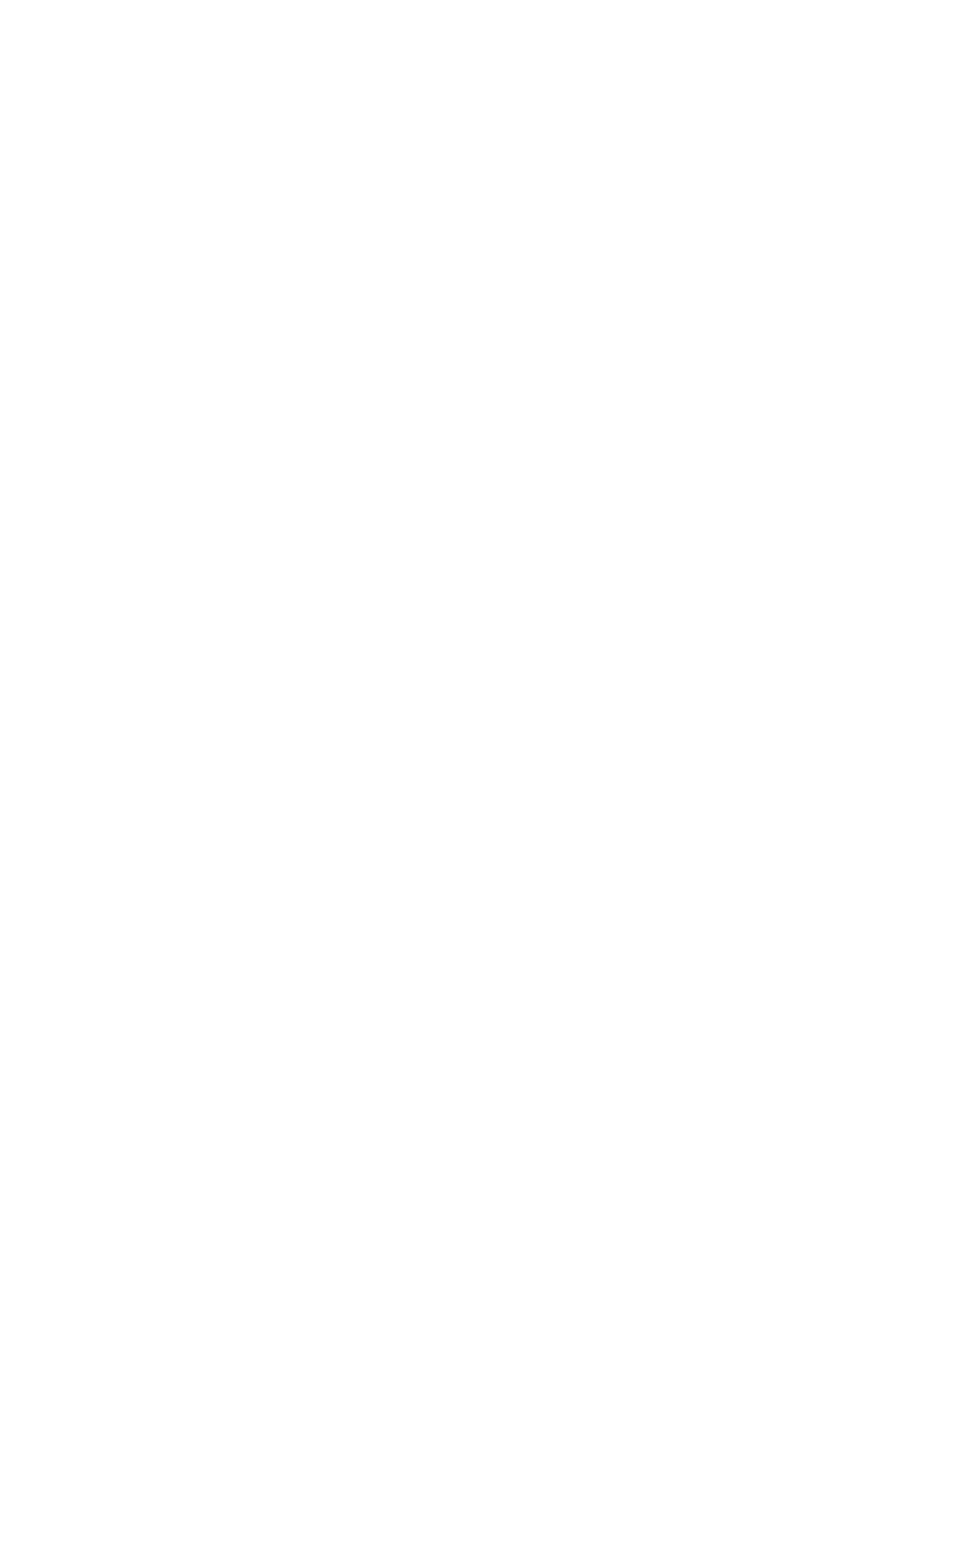 Salvatore Ferragamo logo pour fonds sombres (PNG transparent)